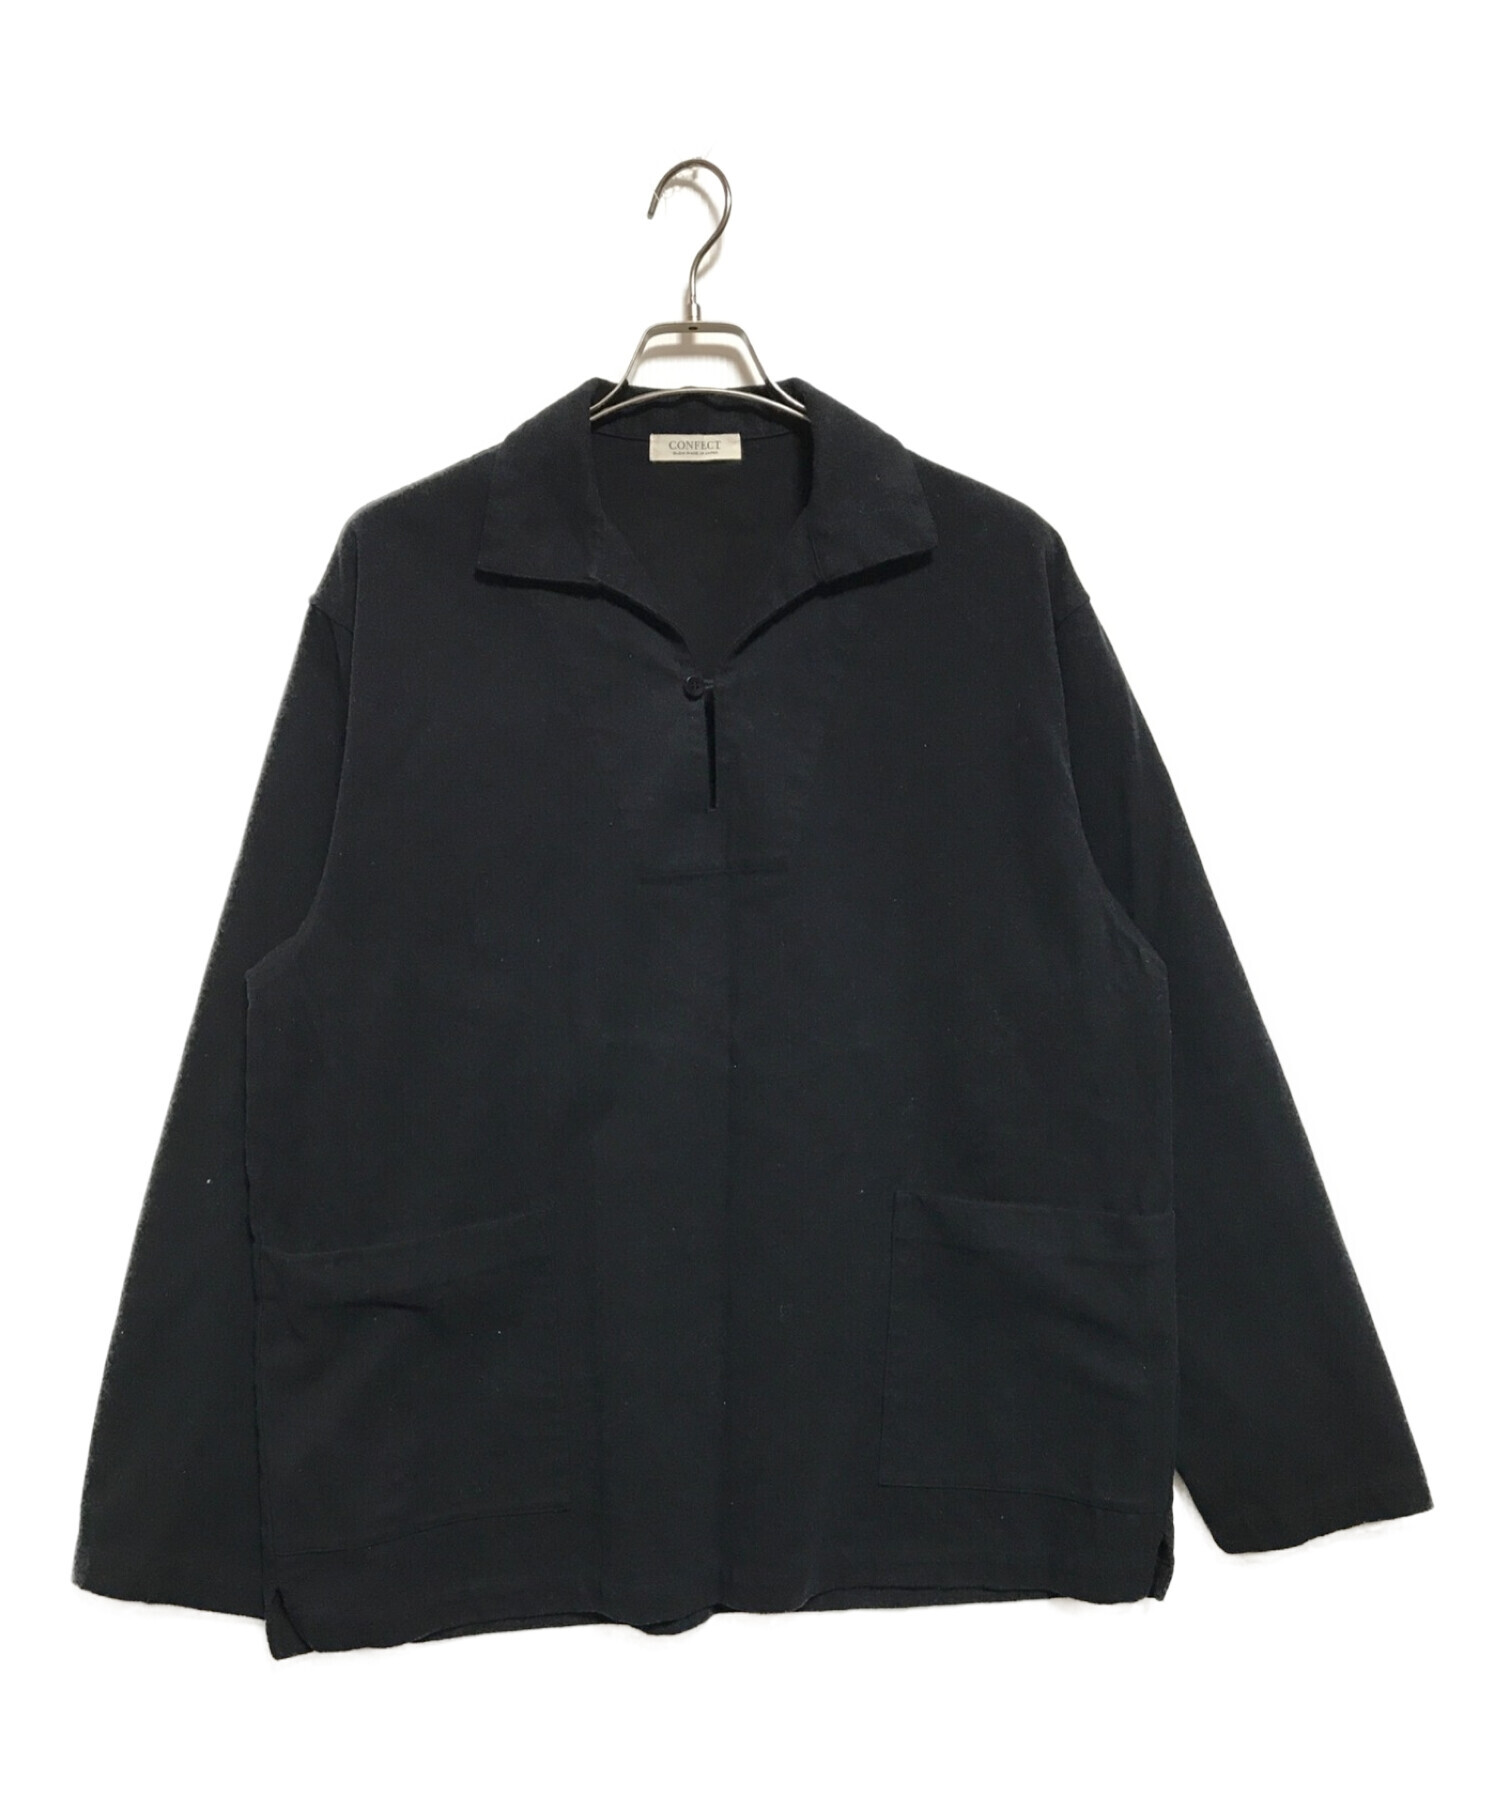 confect (コンフェクト) フランネルワークスモックシャツ ブラック サイズ:SIZE4